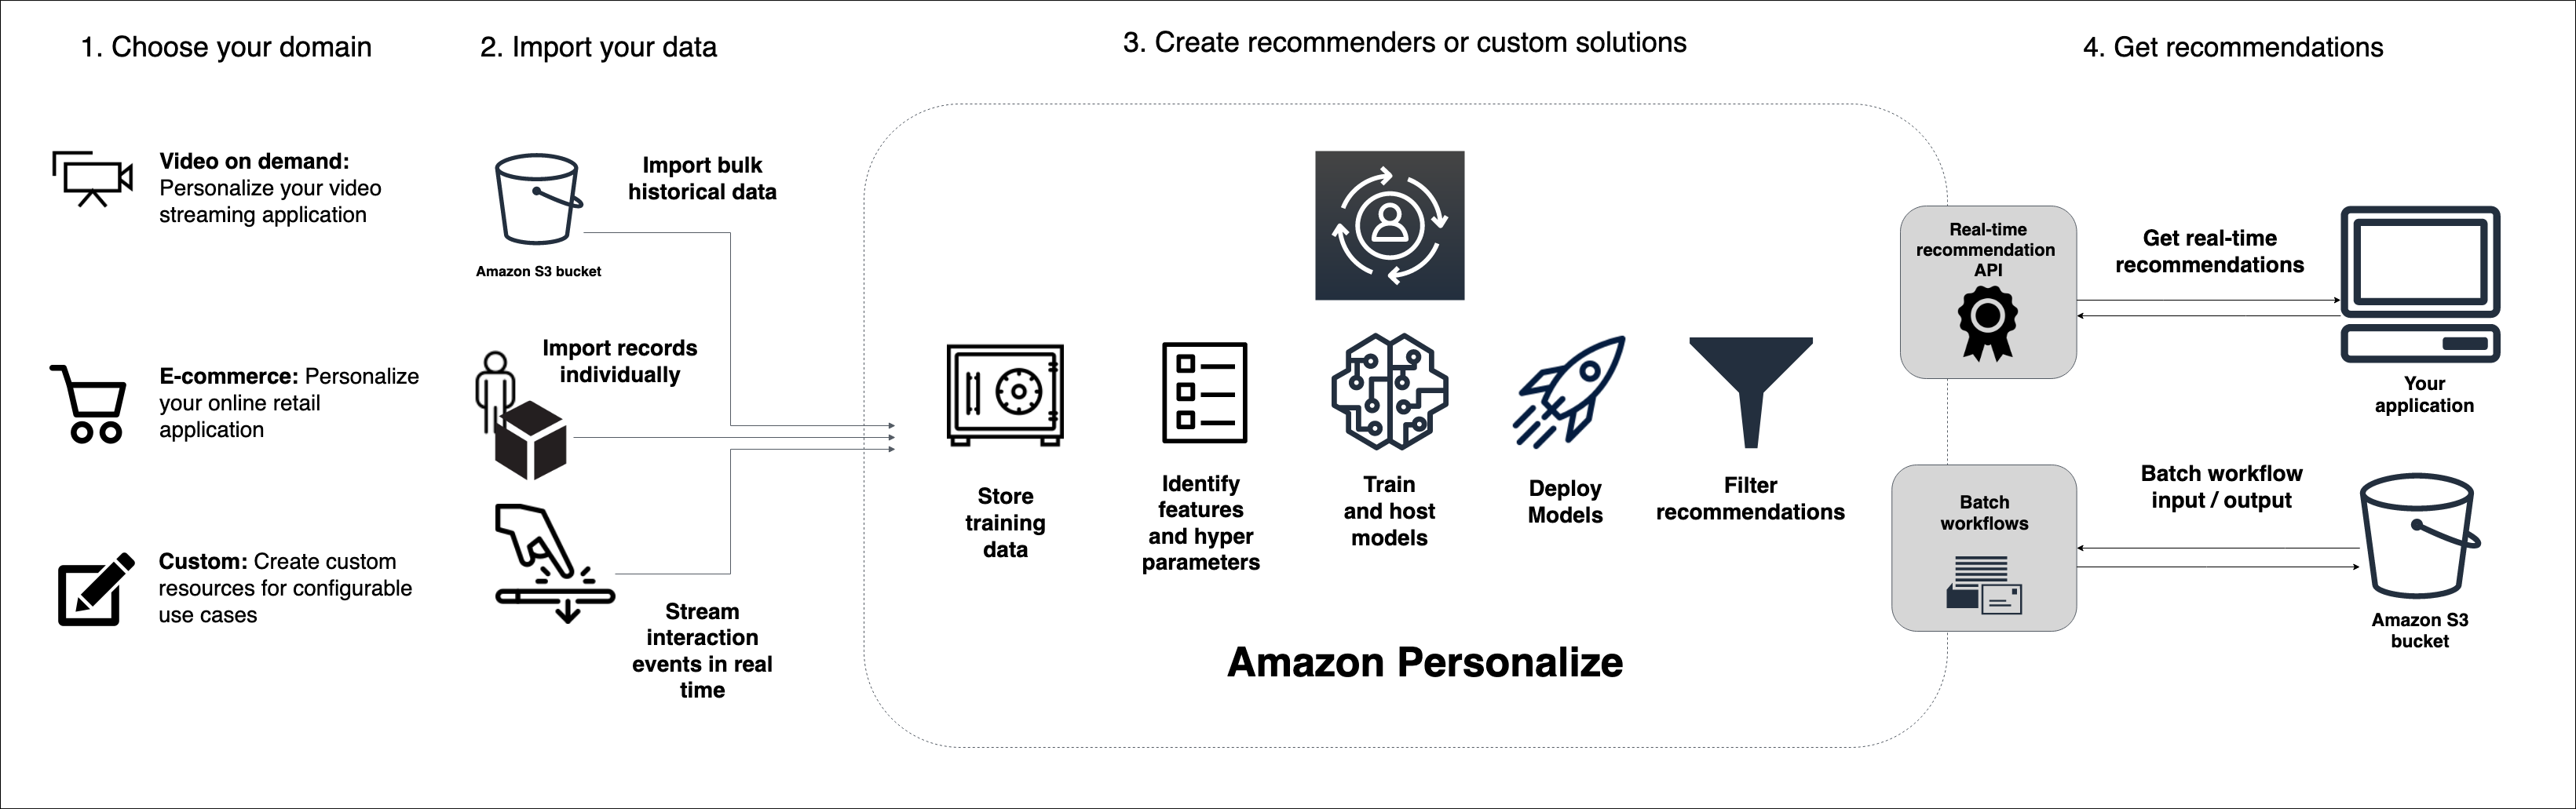 Menggambarkan alur kerja Amazon Personalize, mulai dari mengimpor data, melatih model, hingga mendapatkan rekomendasi.